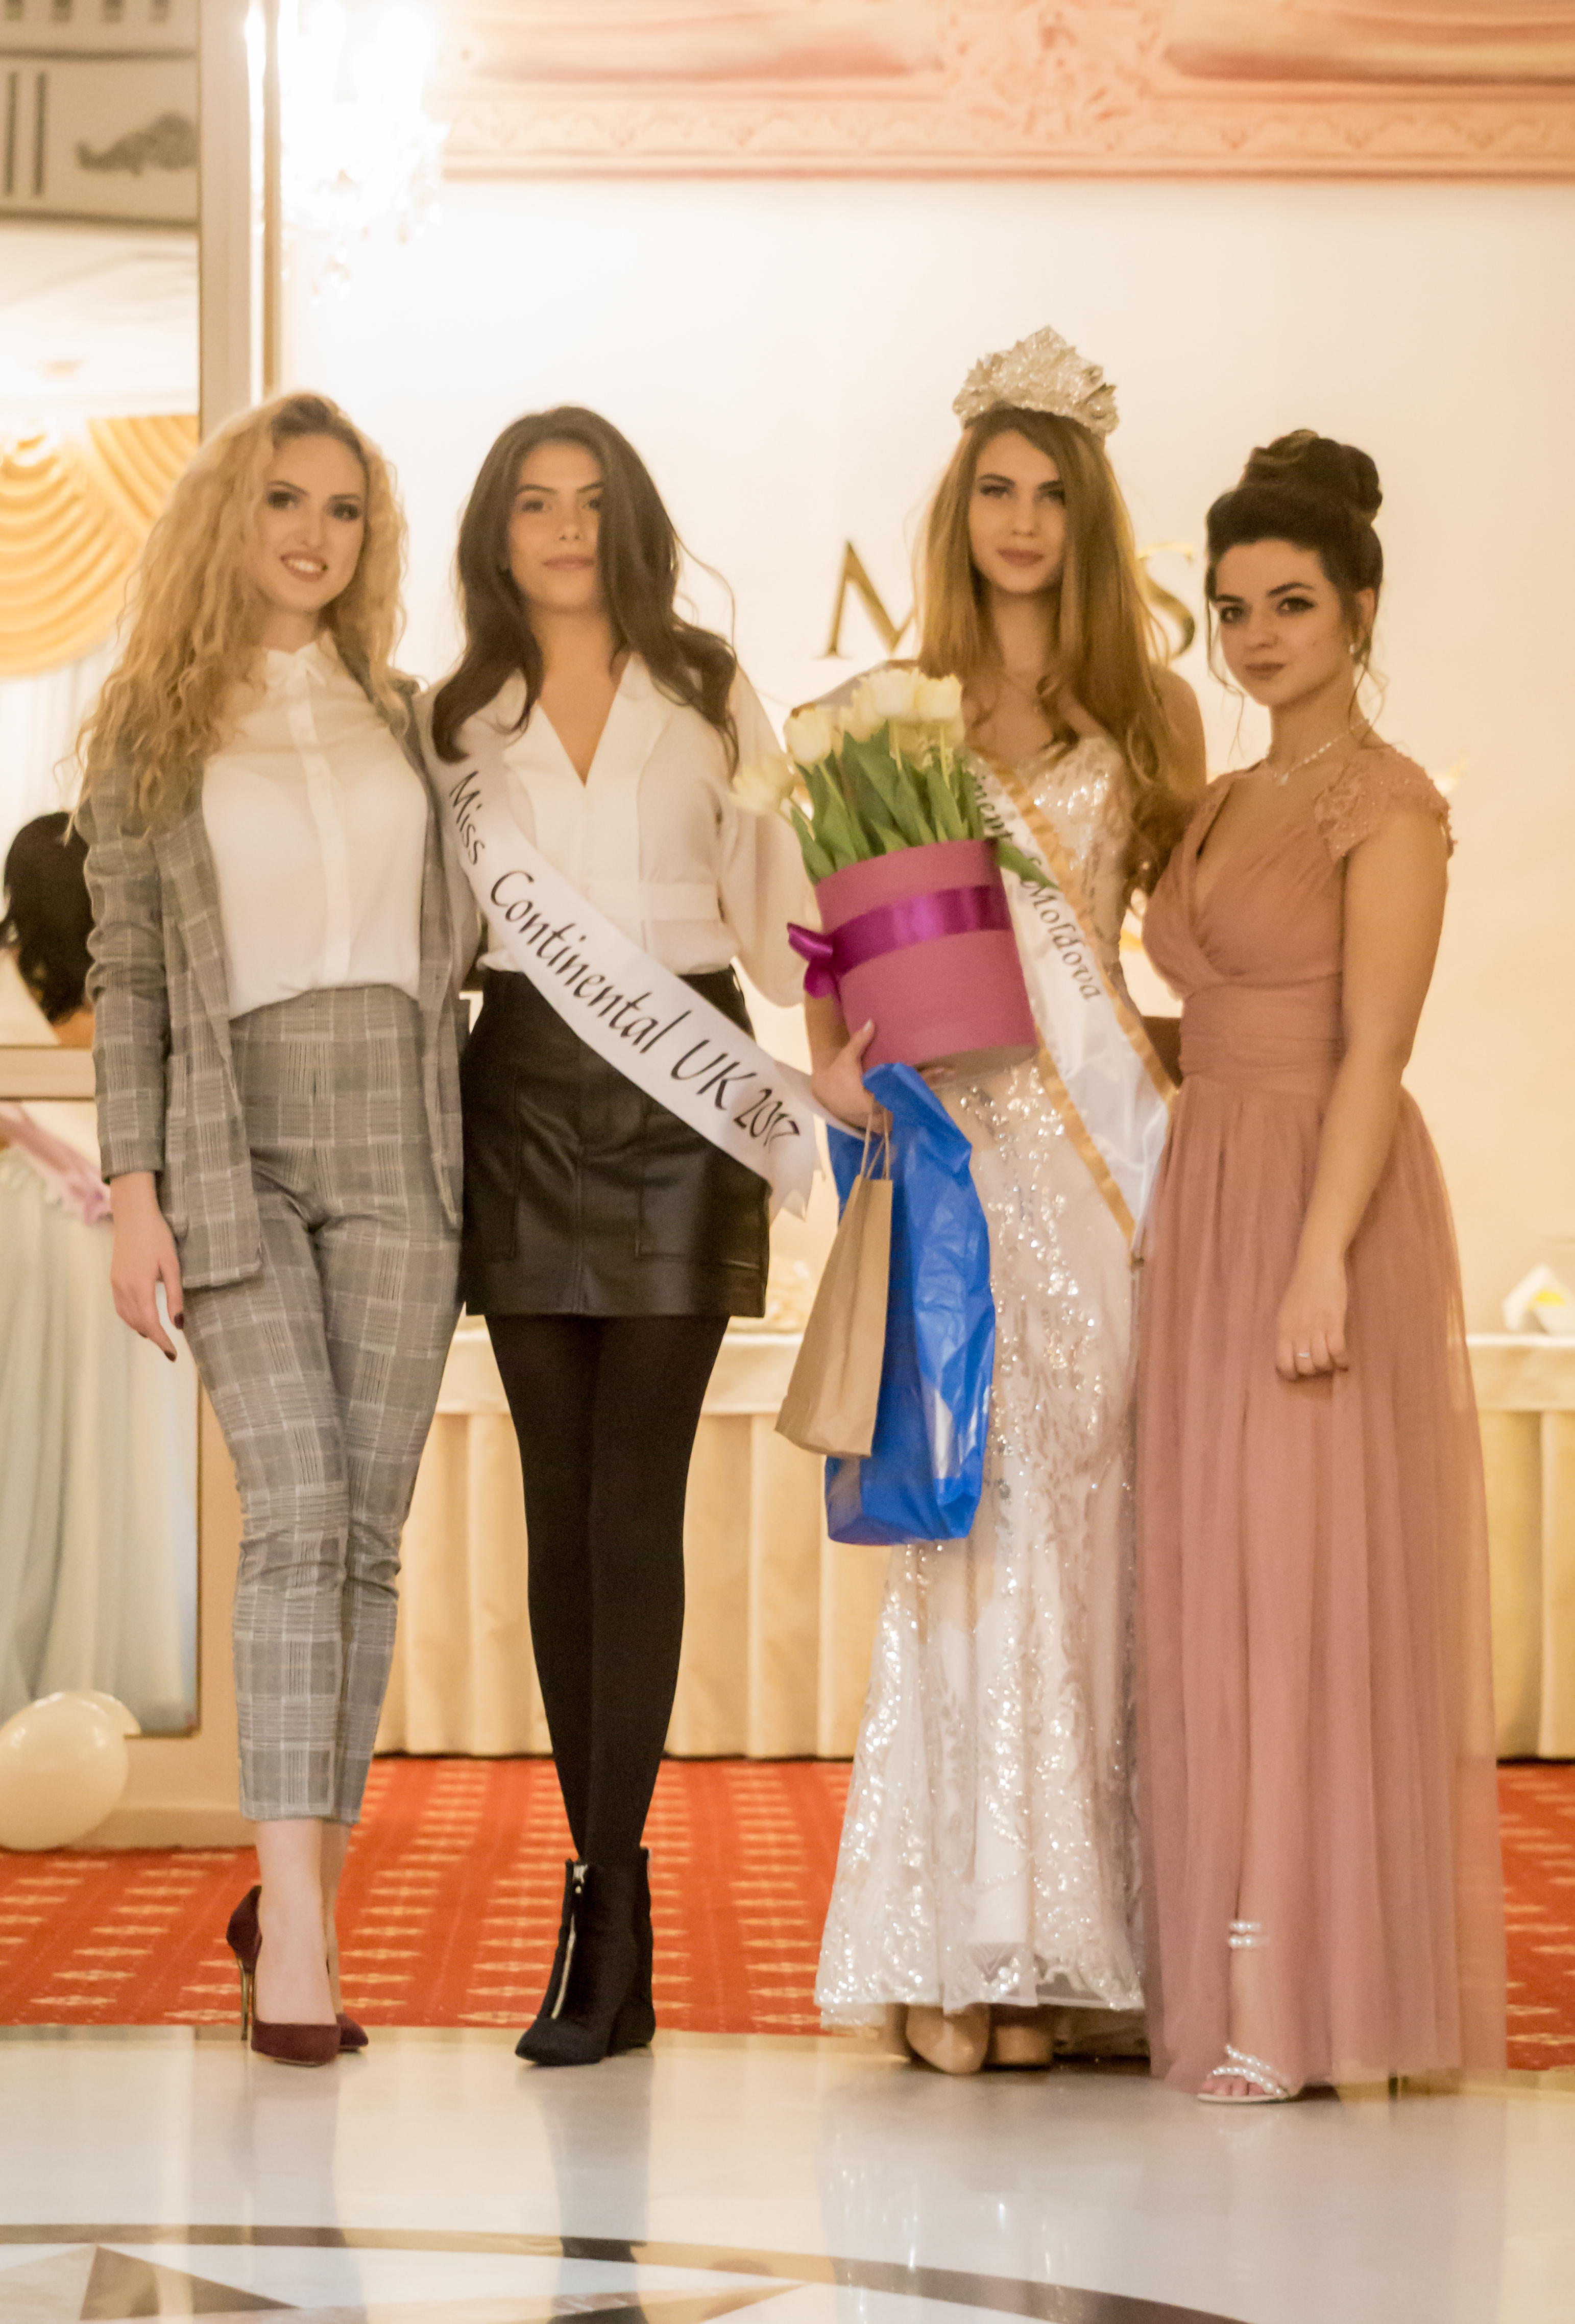 FOTO. Felicia Ursan, o tânără de 17 ani, va reprezenta Republica Moldova la Miss Continental UK din Londra